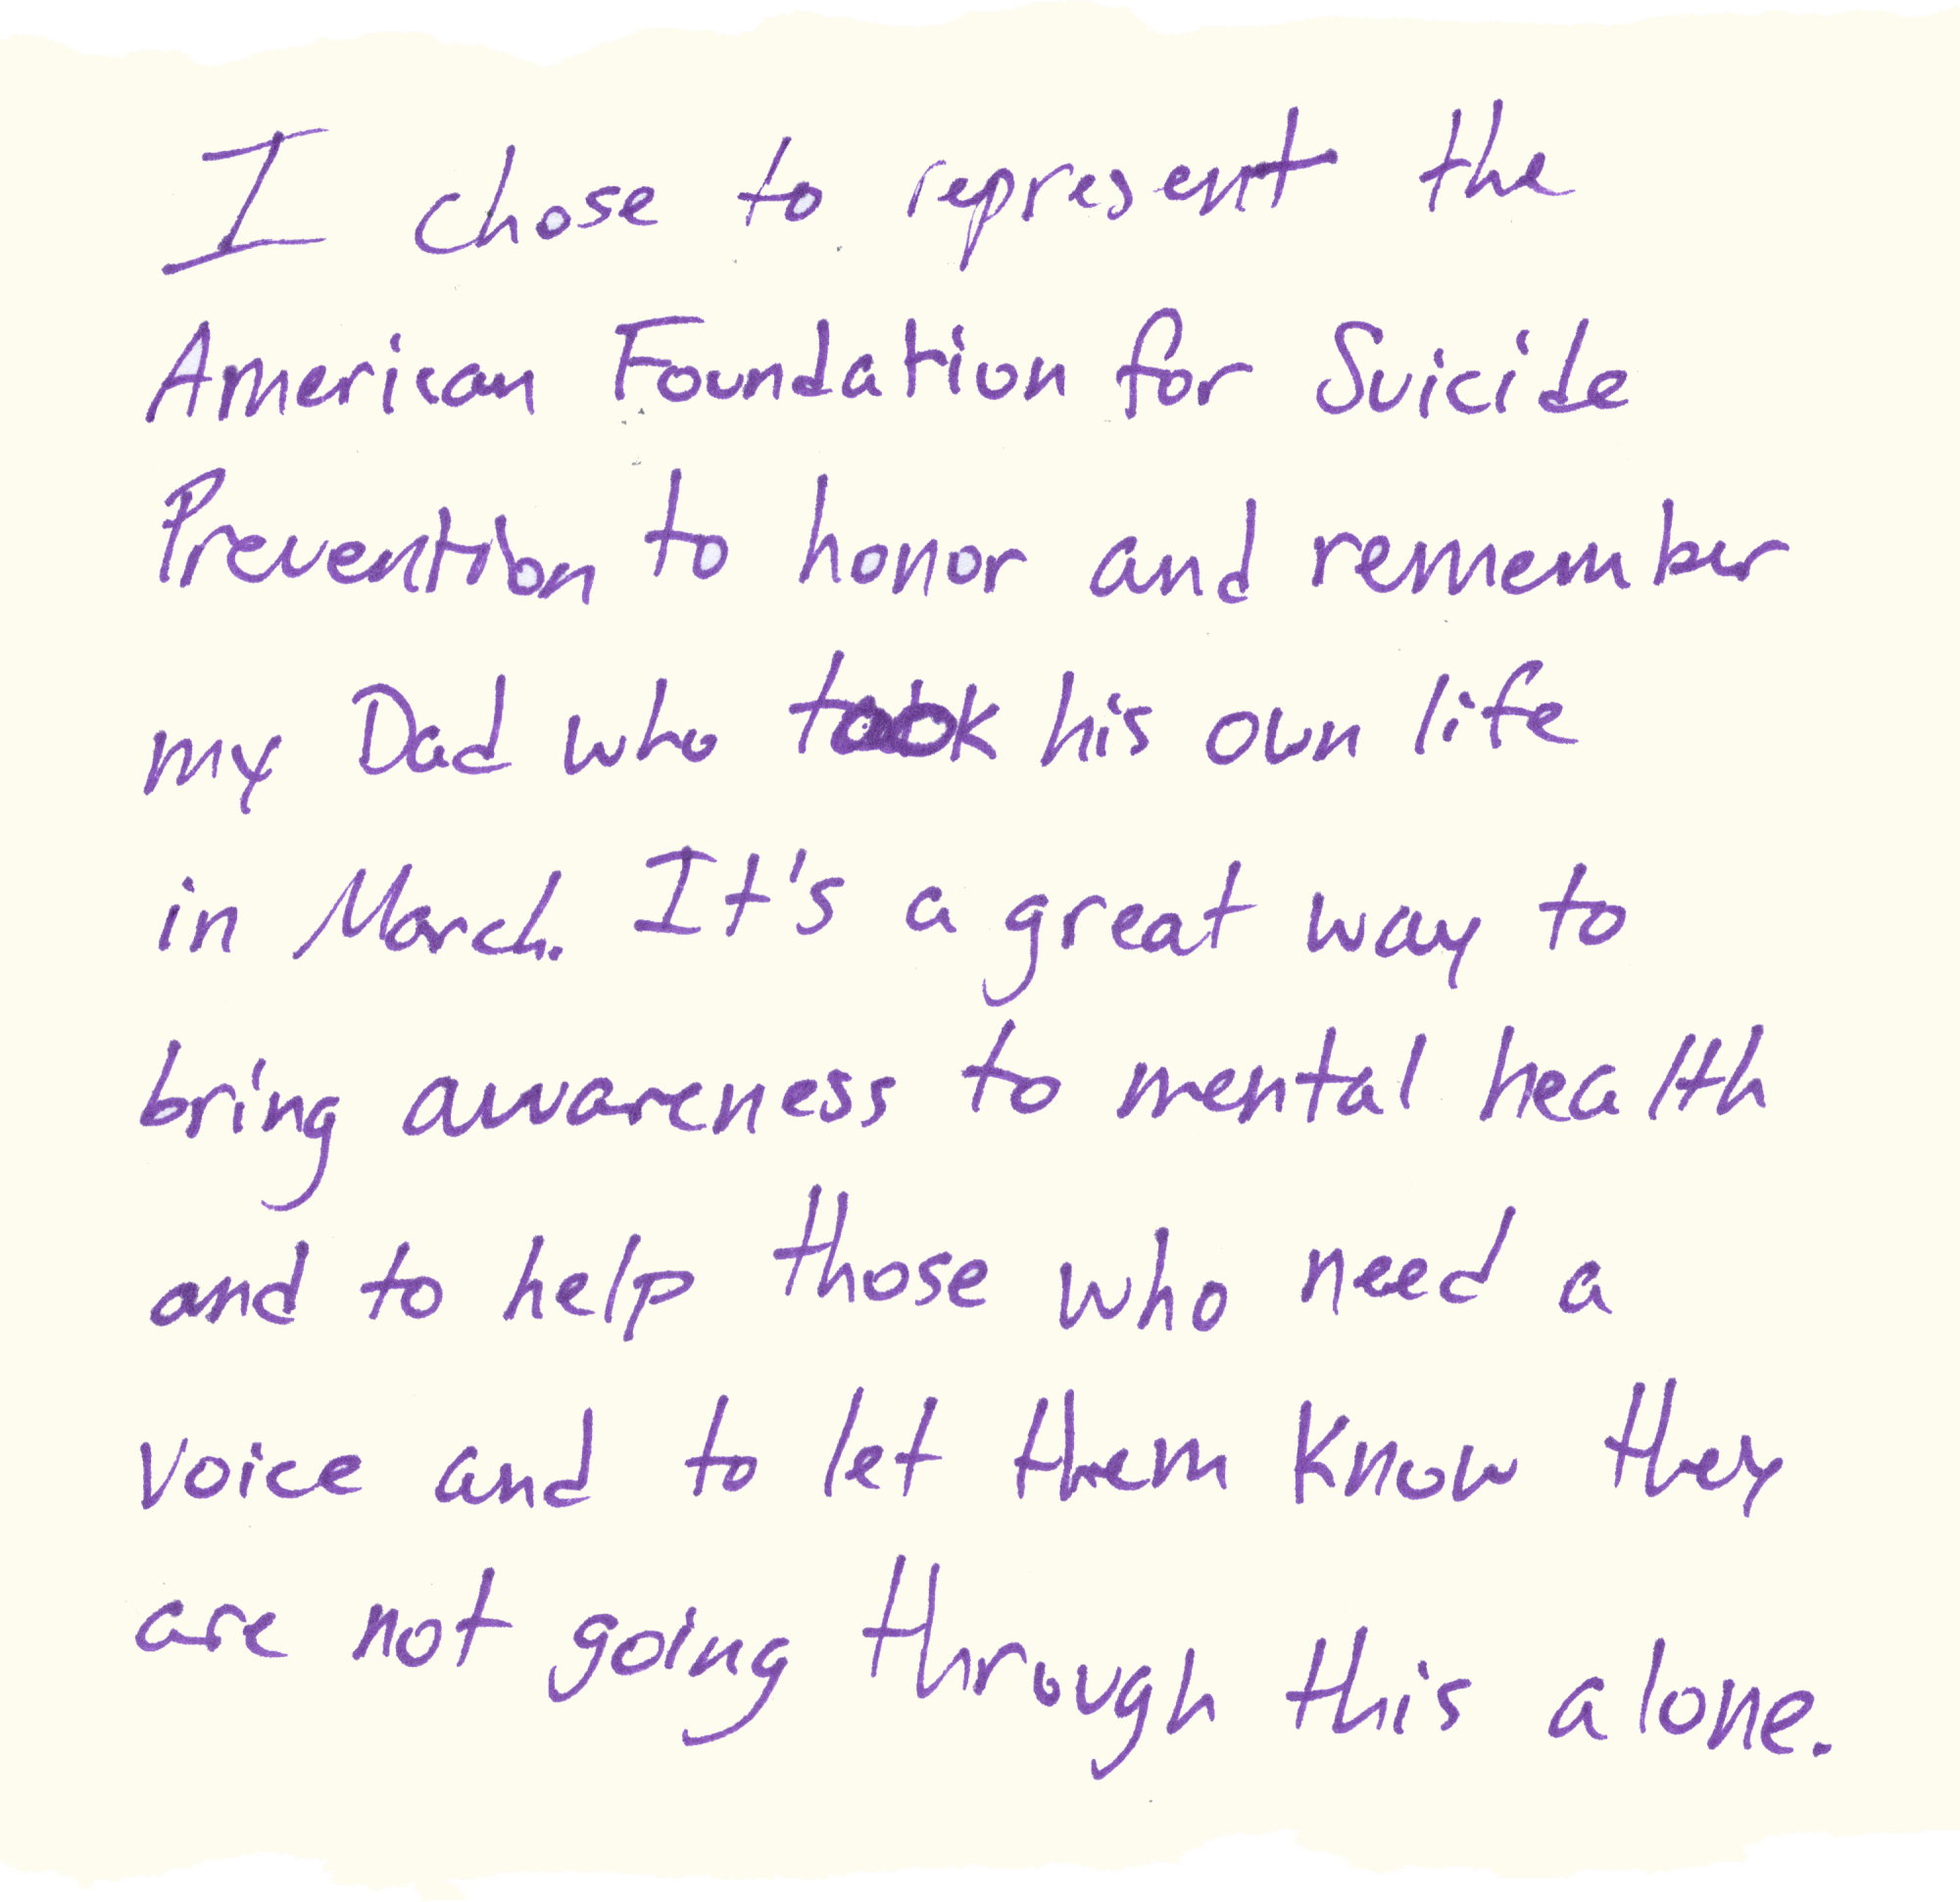 Ich habe mich entschieden, die American Foundation for Suicide Prevention zu vertreten, um meinen Vater zu ehren, der sich im März das Leben genommen hat